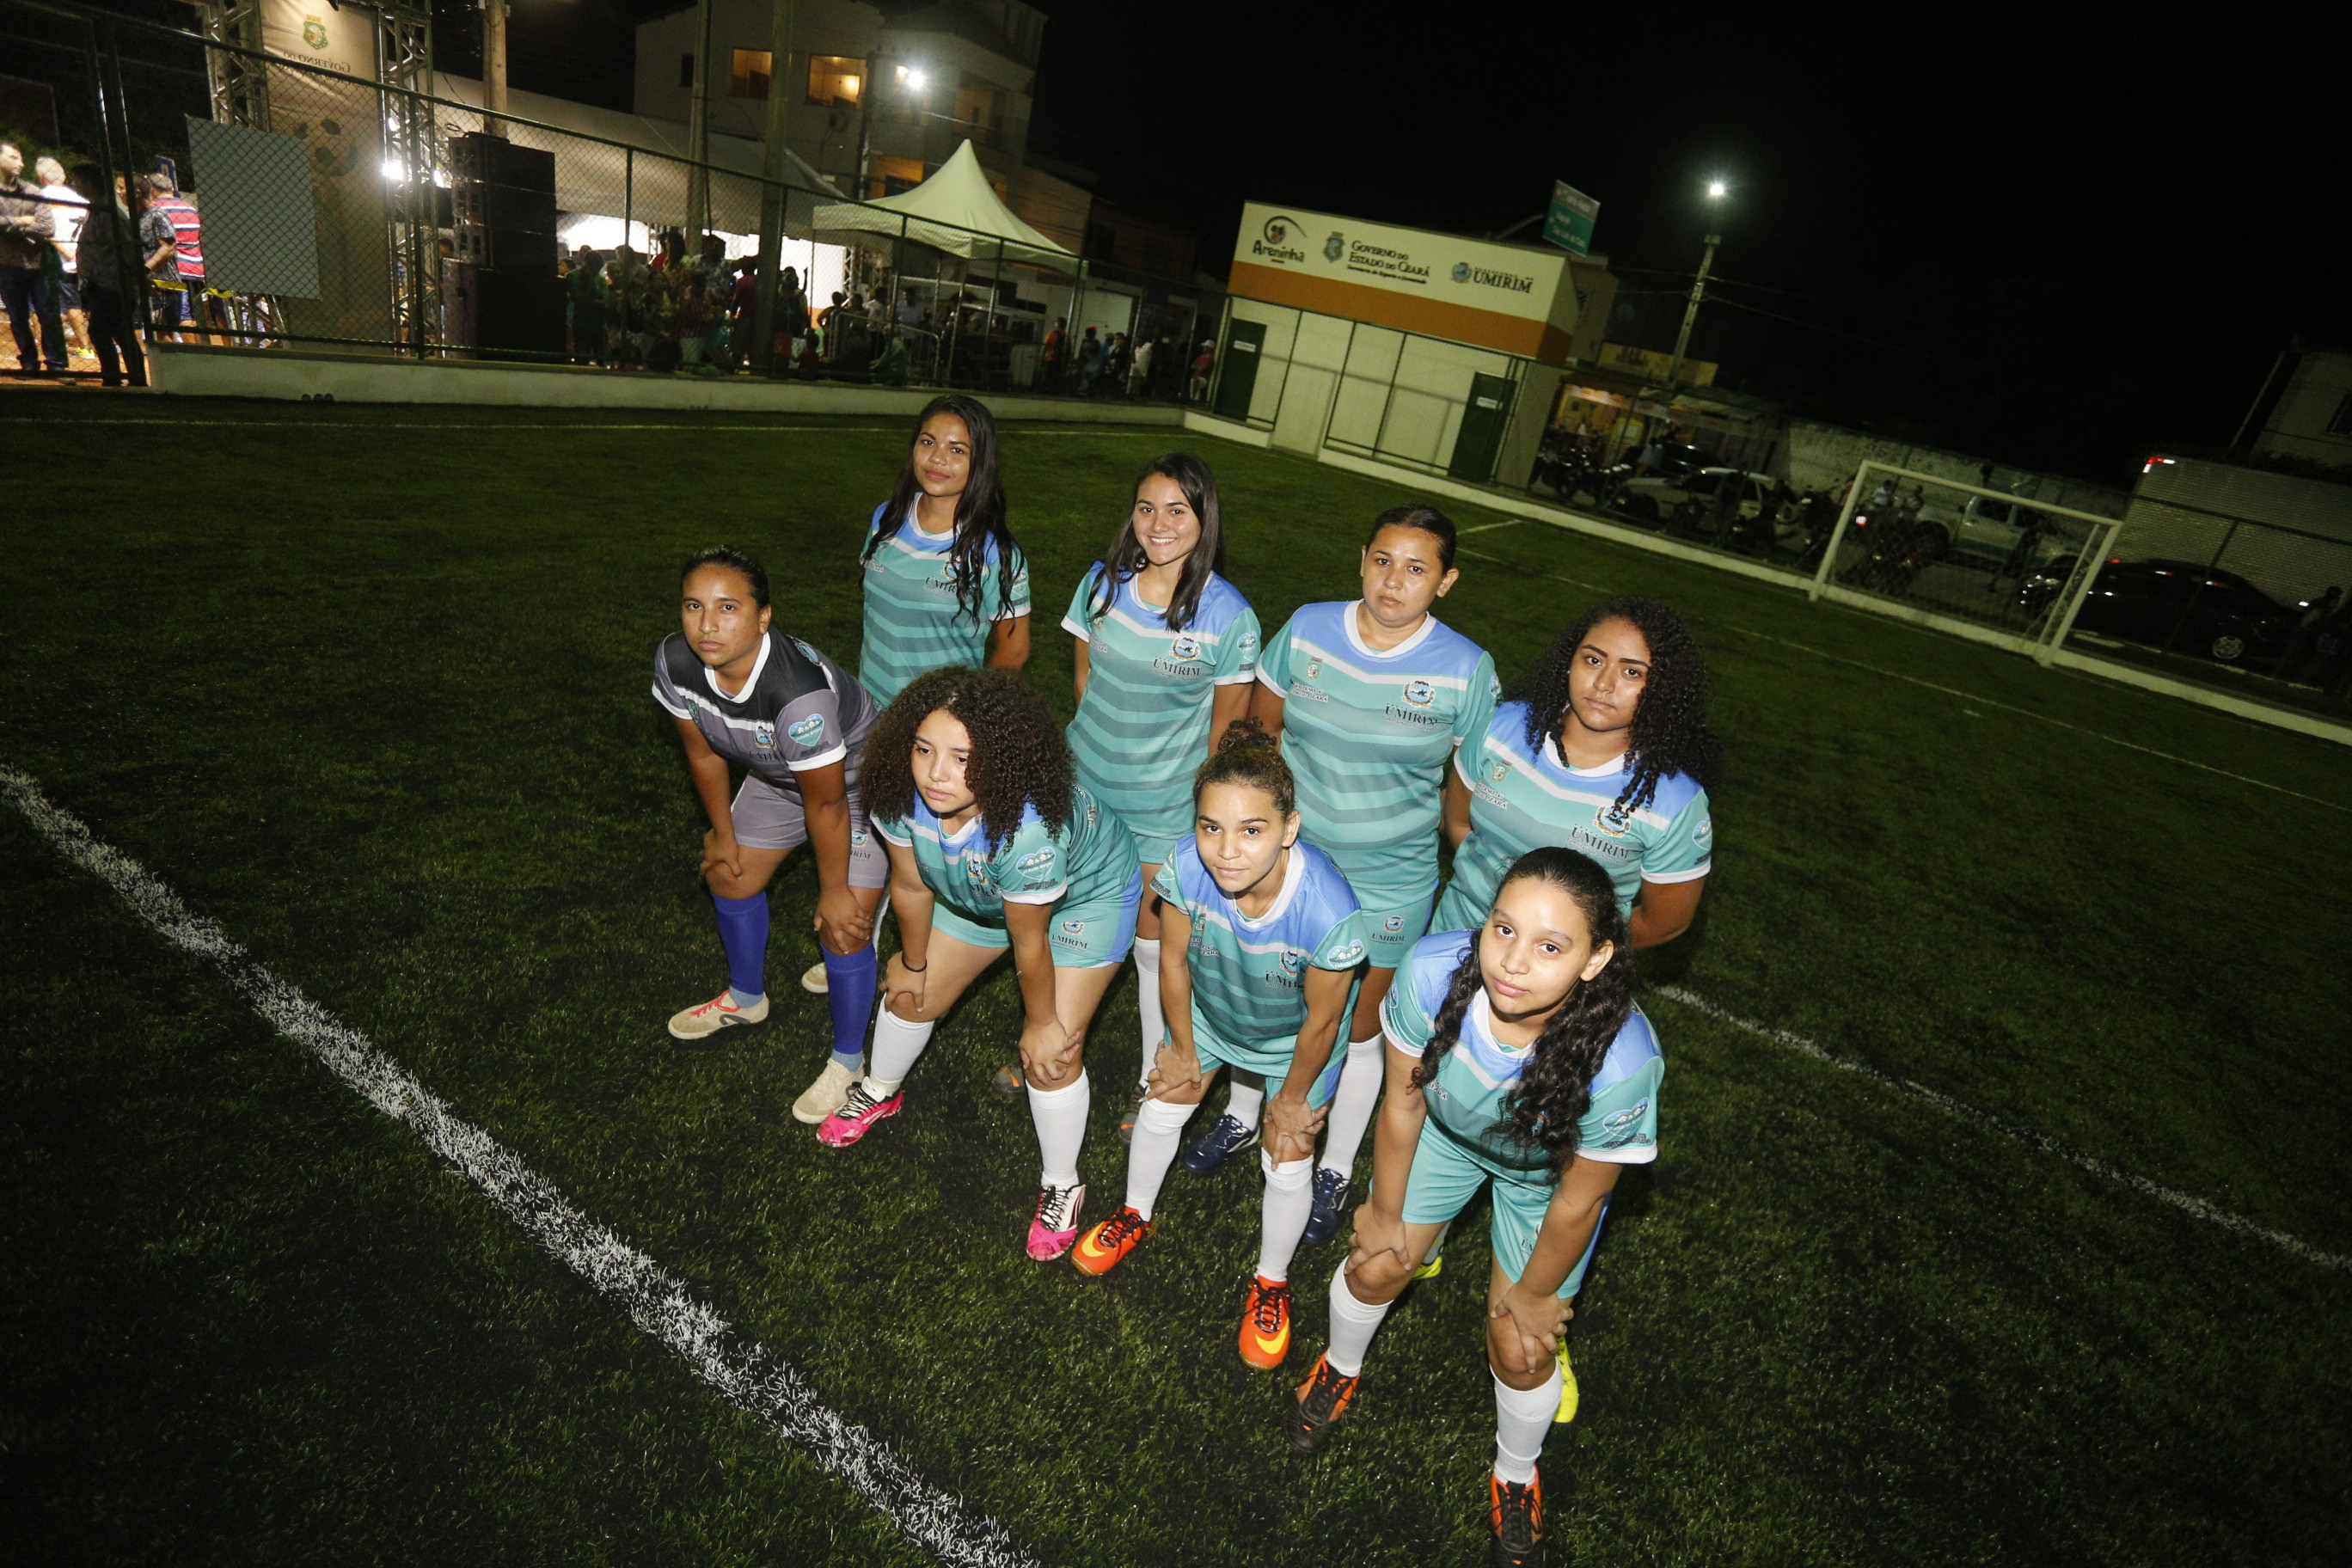 Equipe de futebol feminino posa para foto antes de partida inaugural na Areninha de Umirim